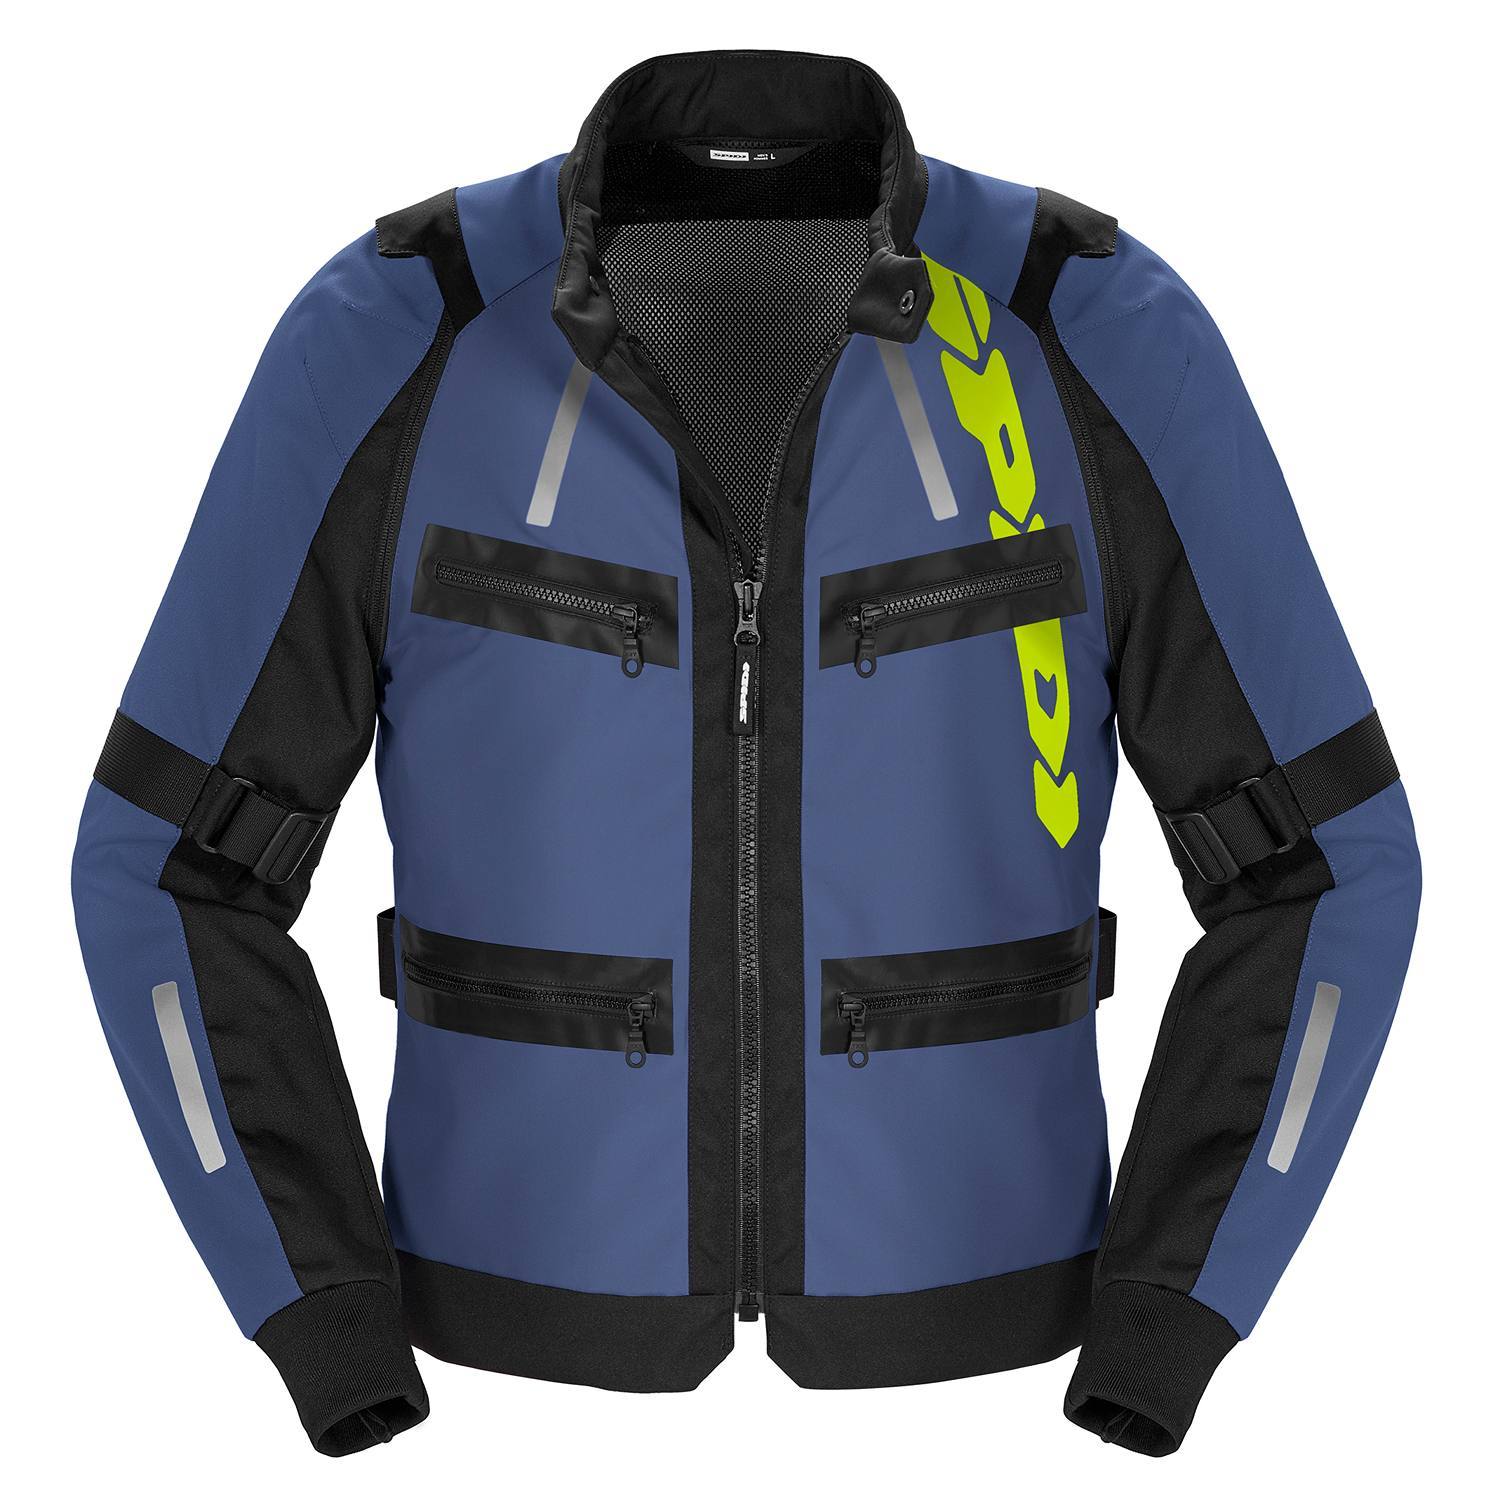 Image of Spidi Enduro Pro Jacket Blue Yellow Size M ID 8030161485066